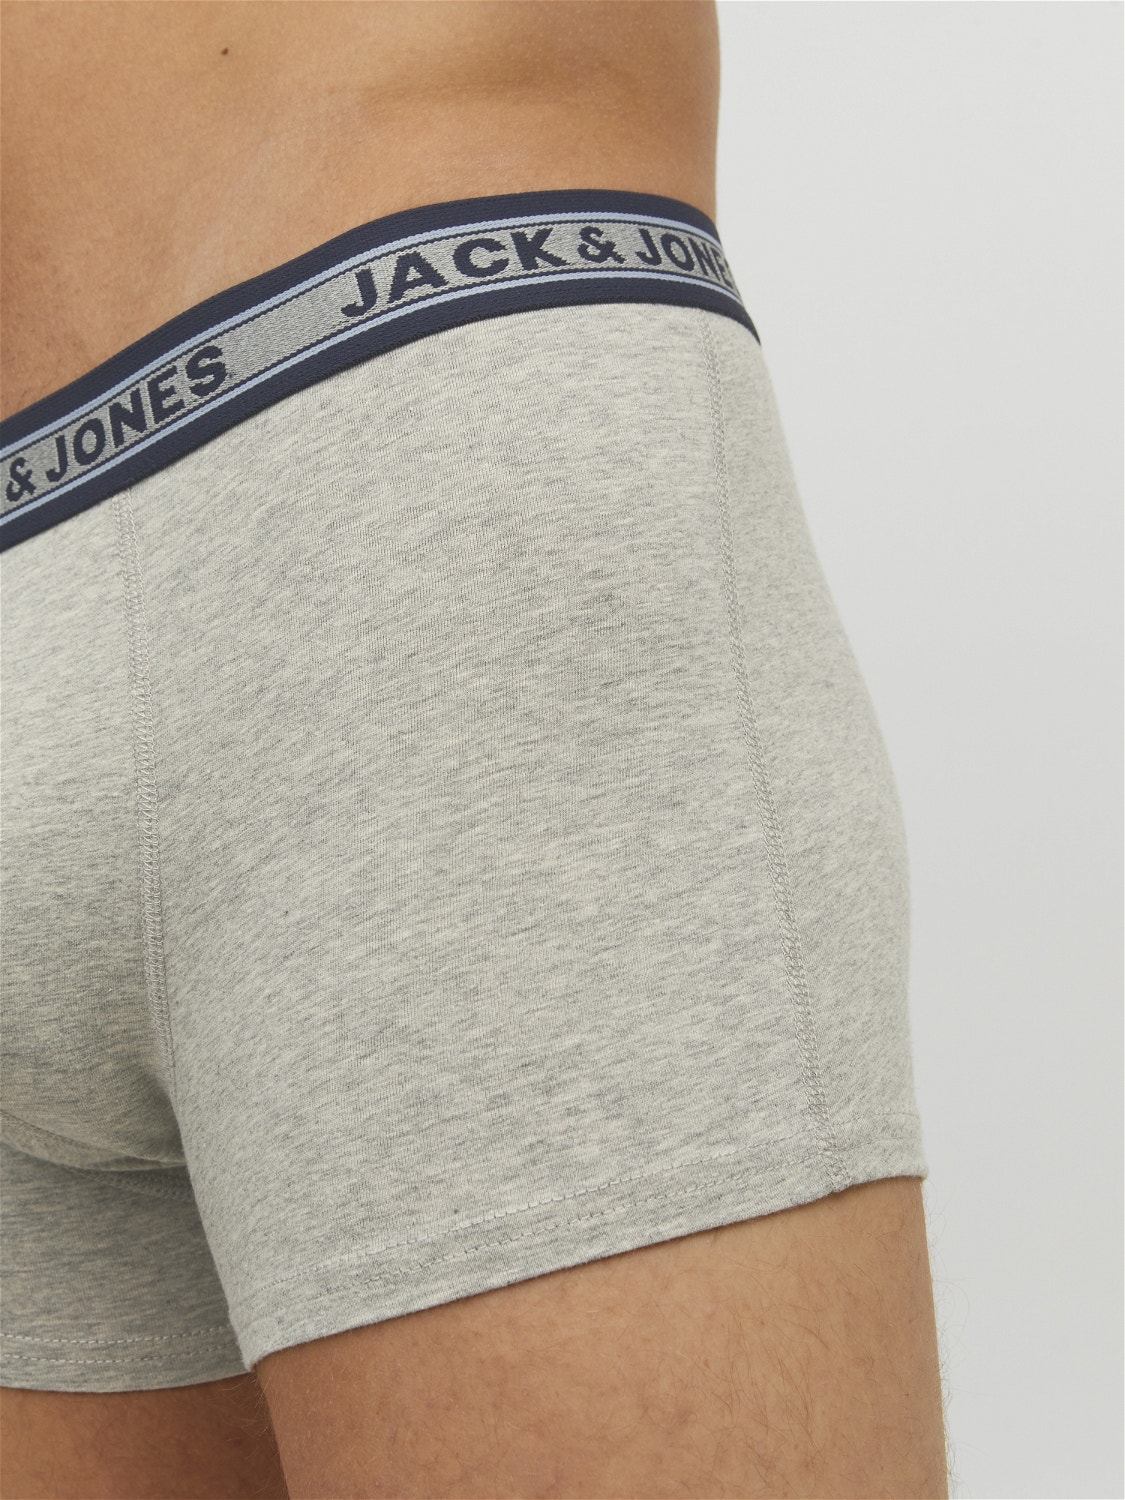 Jack & Jones 5-pak Trunks -Dark Grey Melange - 12165348